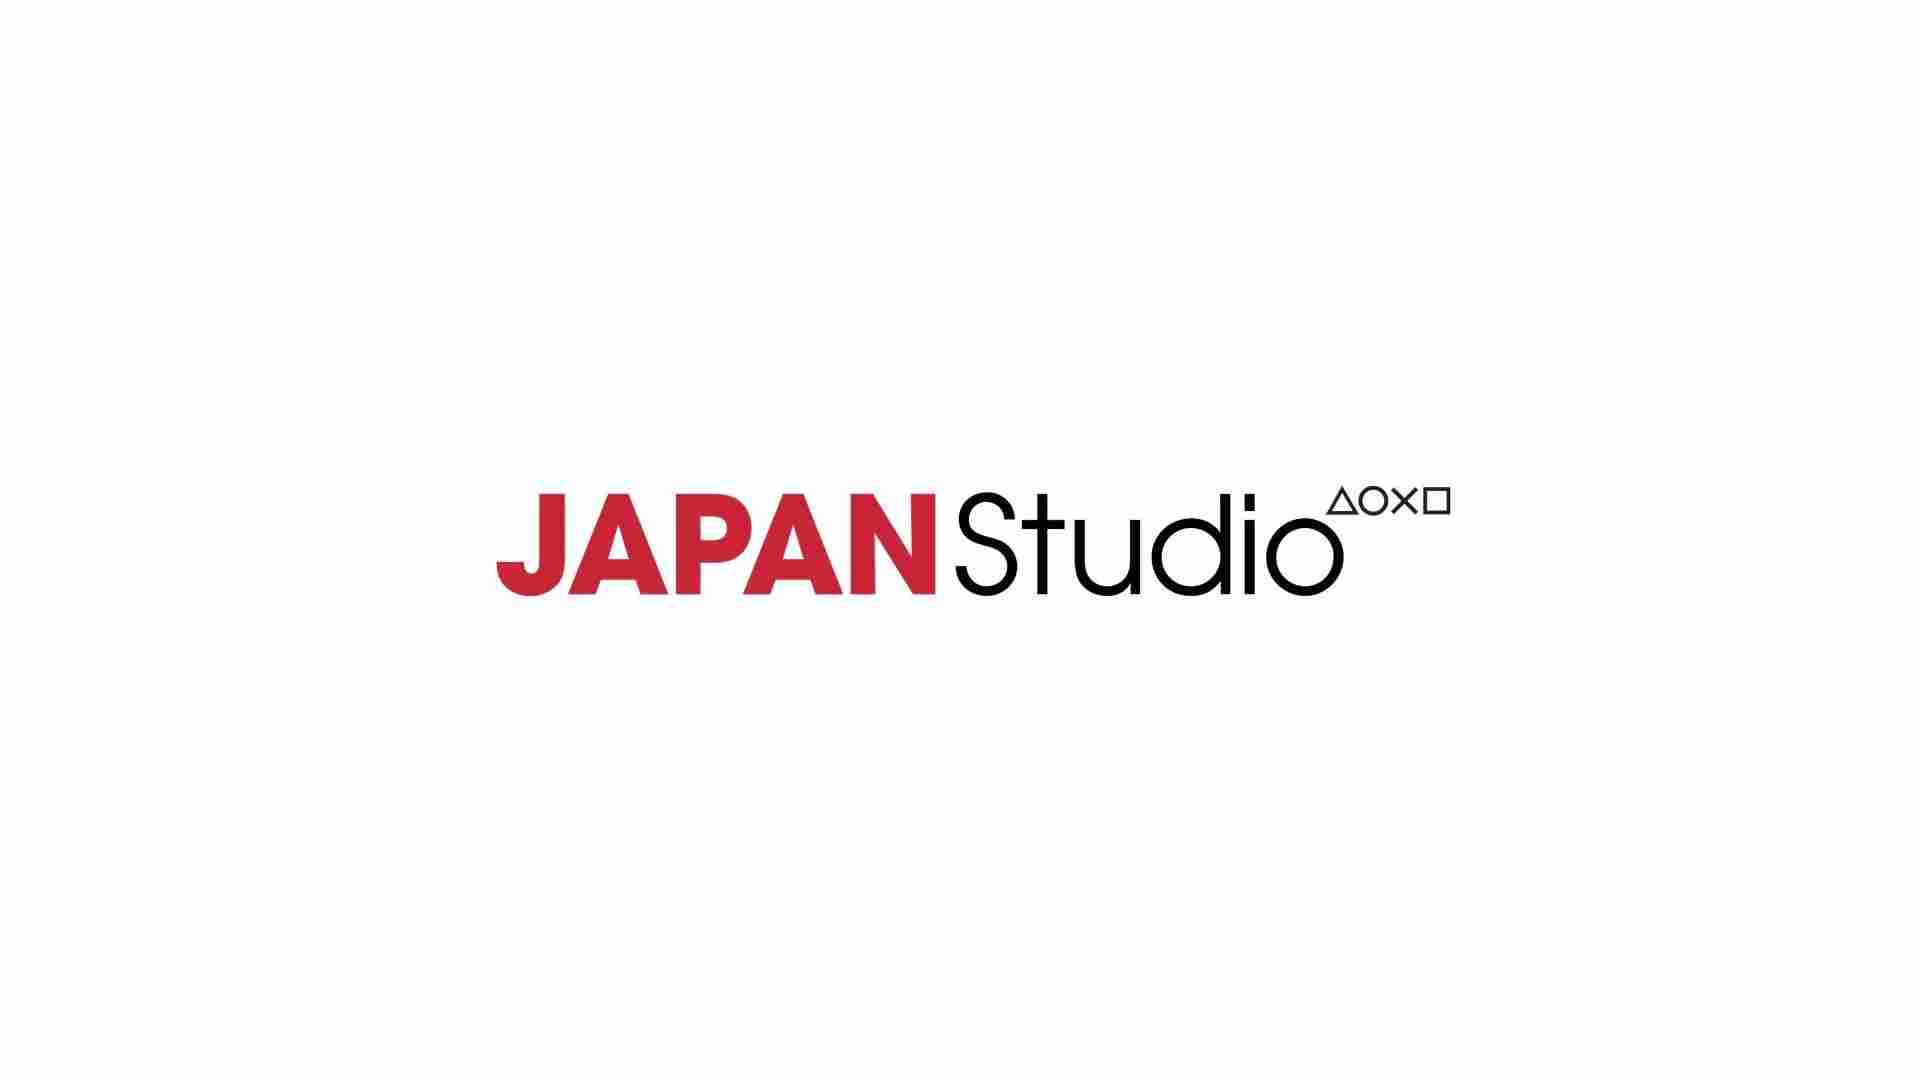 sie japan studio closing